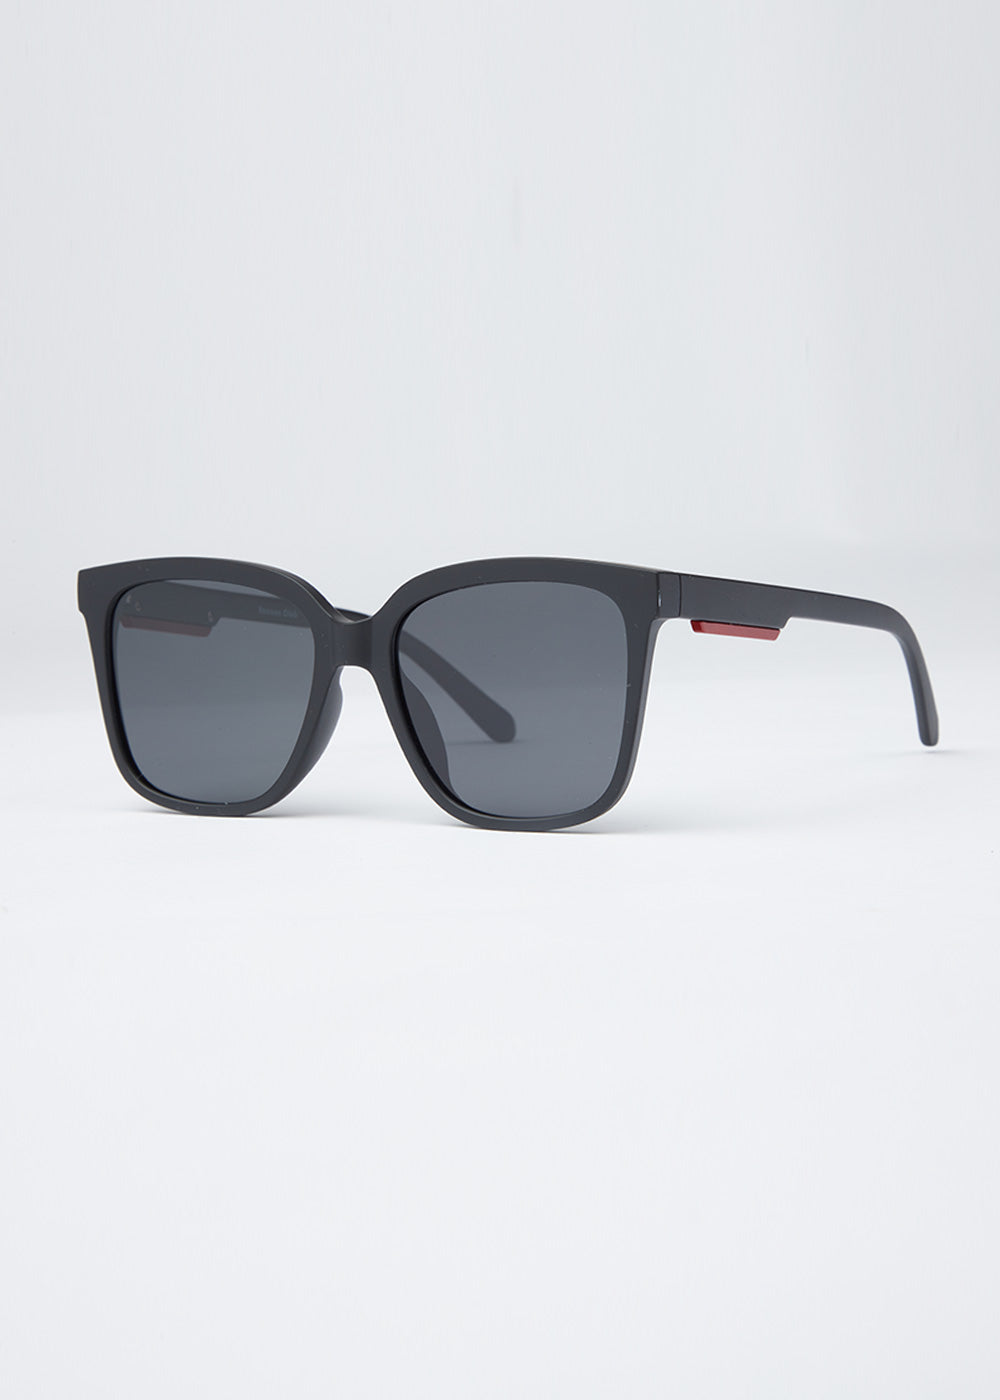 Devine Black Unisex Square Sunglasses